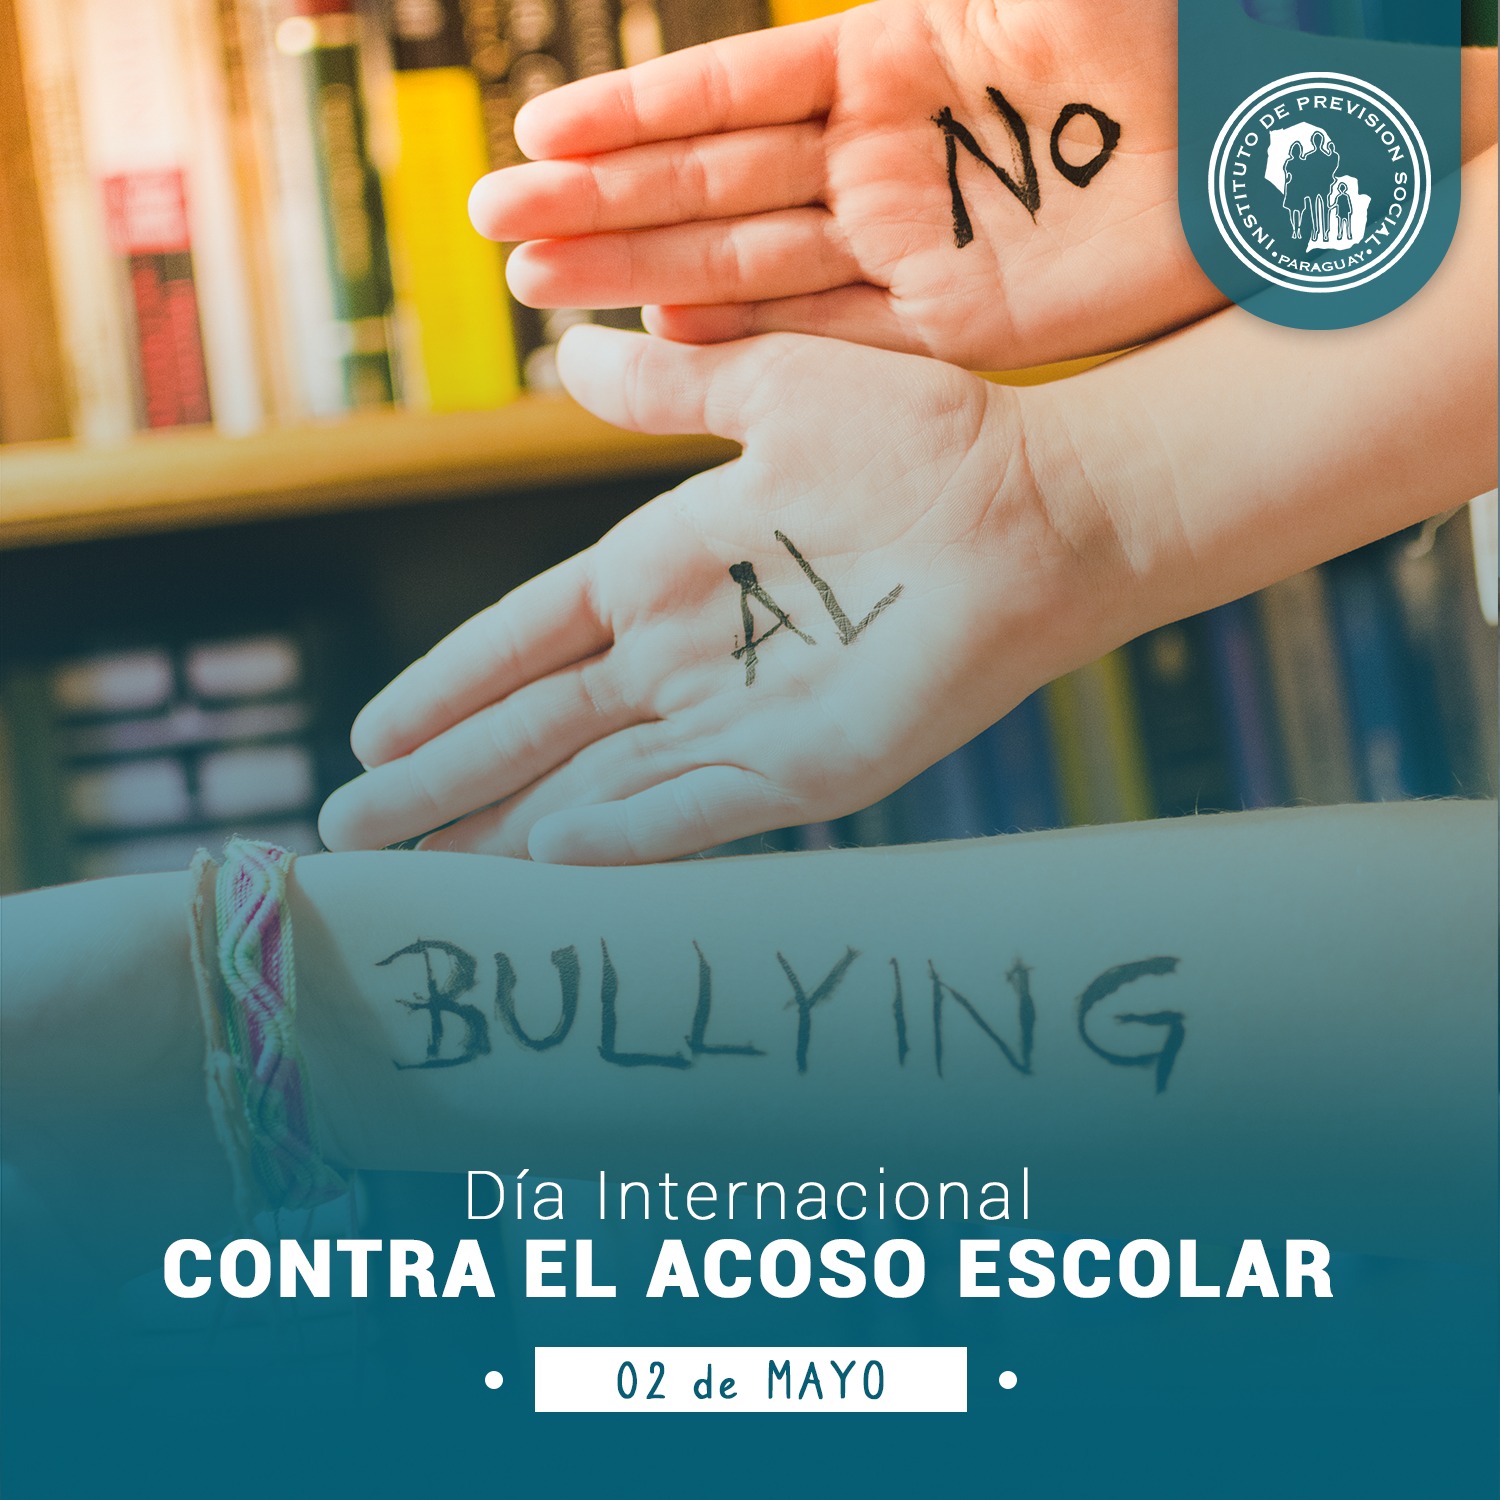 El bullying o acoso escolar es tratado en el  Servicio de Psicología del IPS